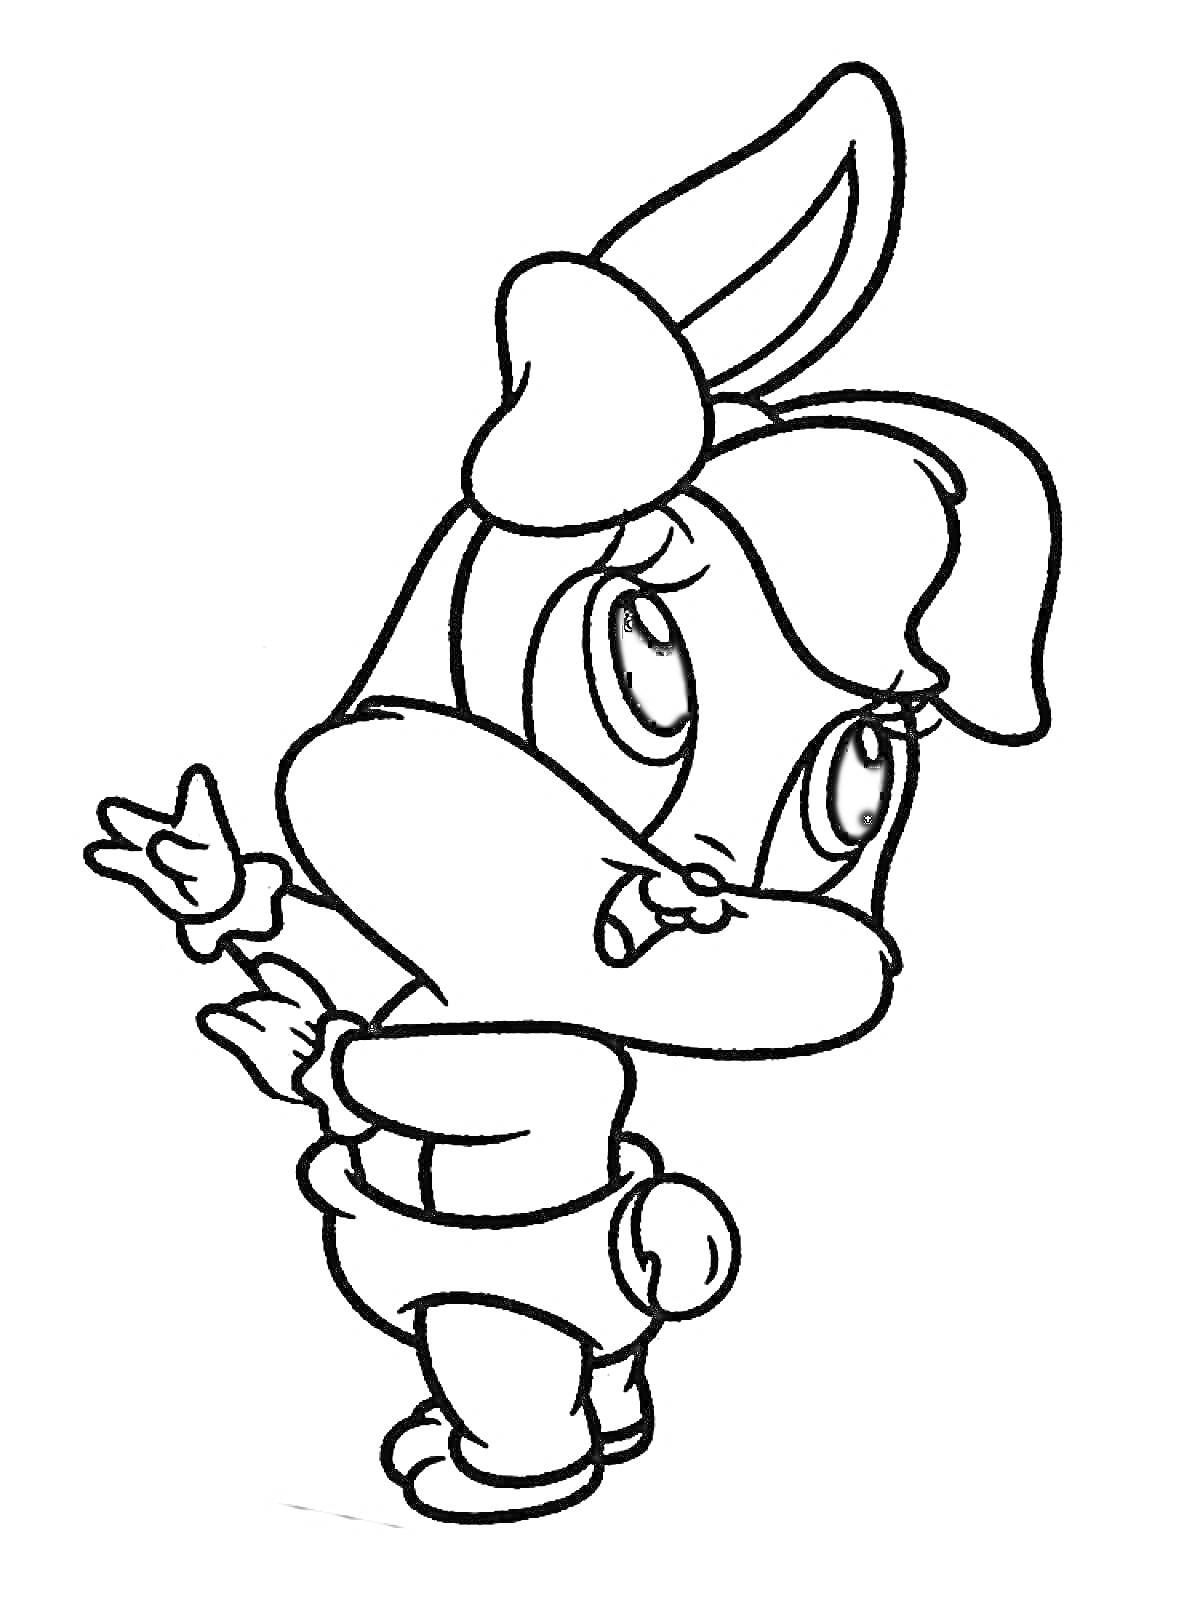 РаскраскаМультяшный заяц в одежде с бантиком на голове